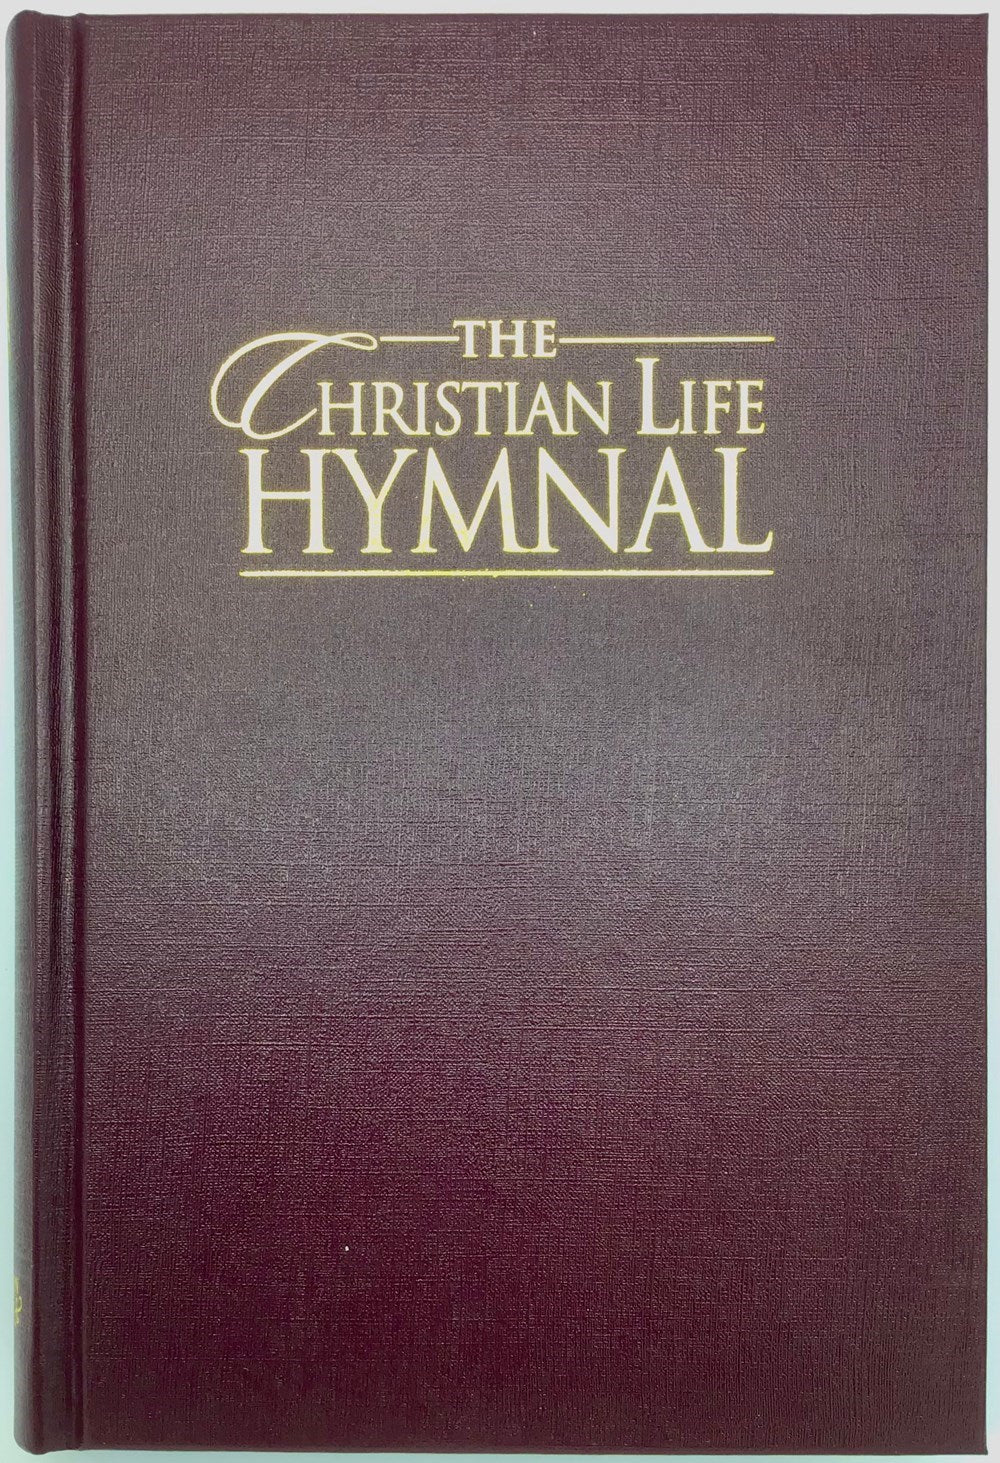 Hymnal-Christian Life Hymnal-Burgundy Hardcover